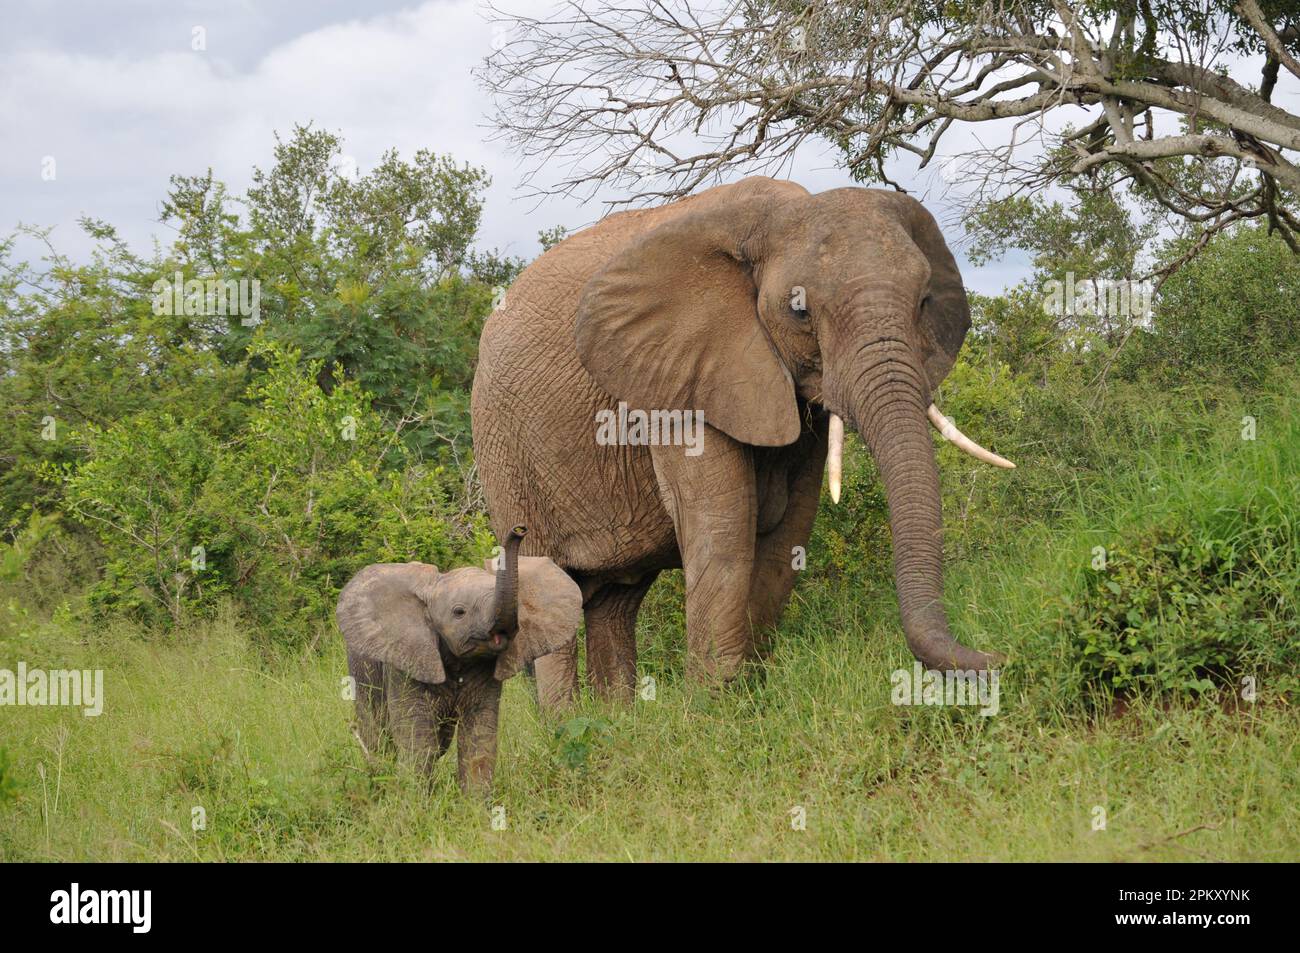 Elephants in the Wild Stock Photo